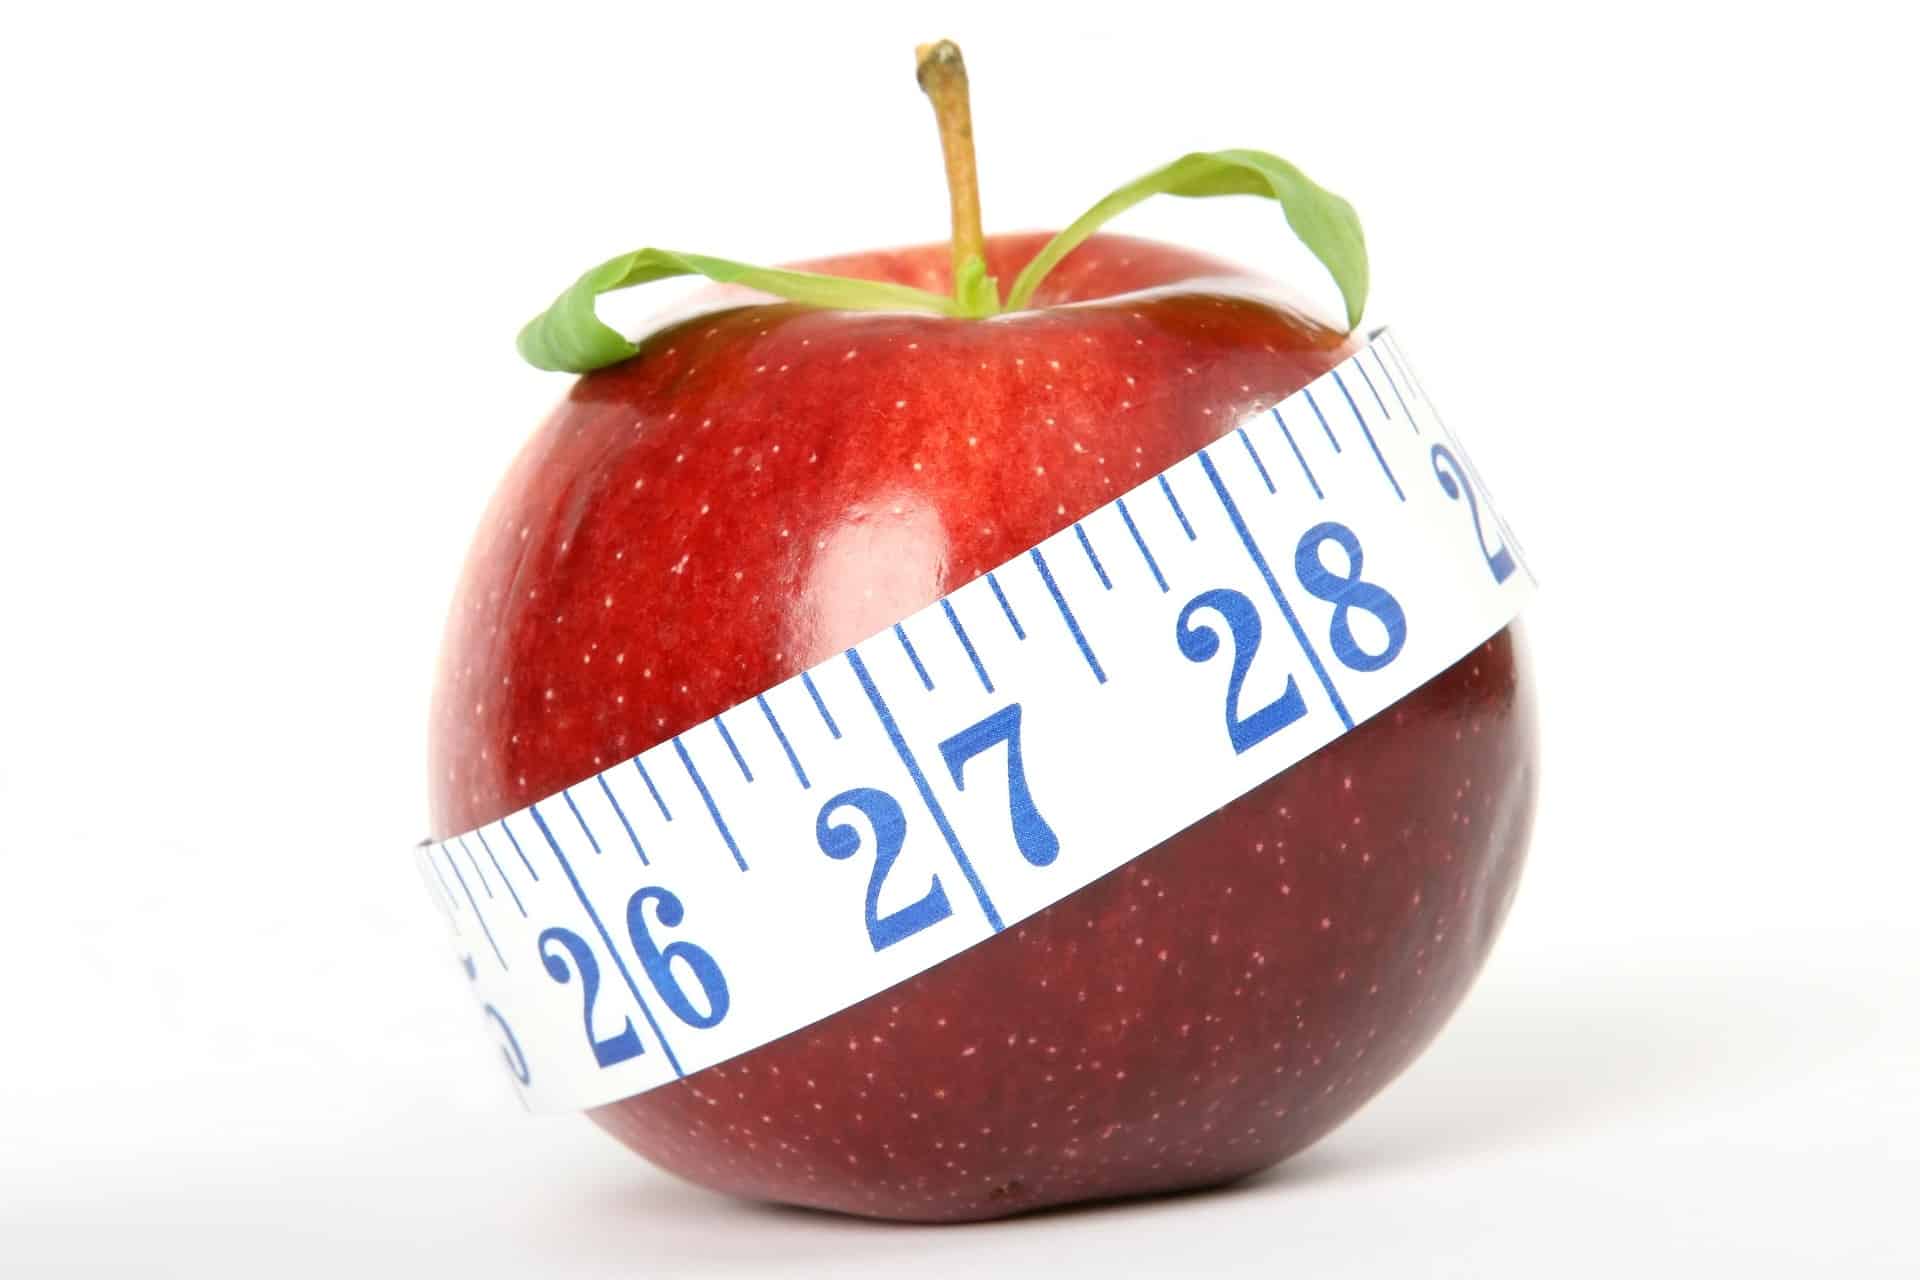 Jaká je vaše ideální váha? Vypočítáte ji pomocí jednoduchých vzorců